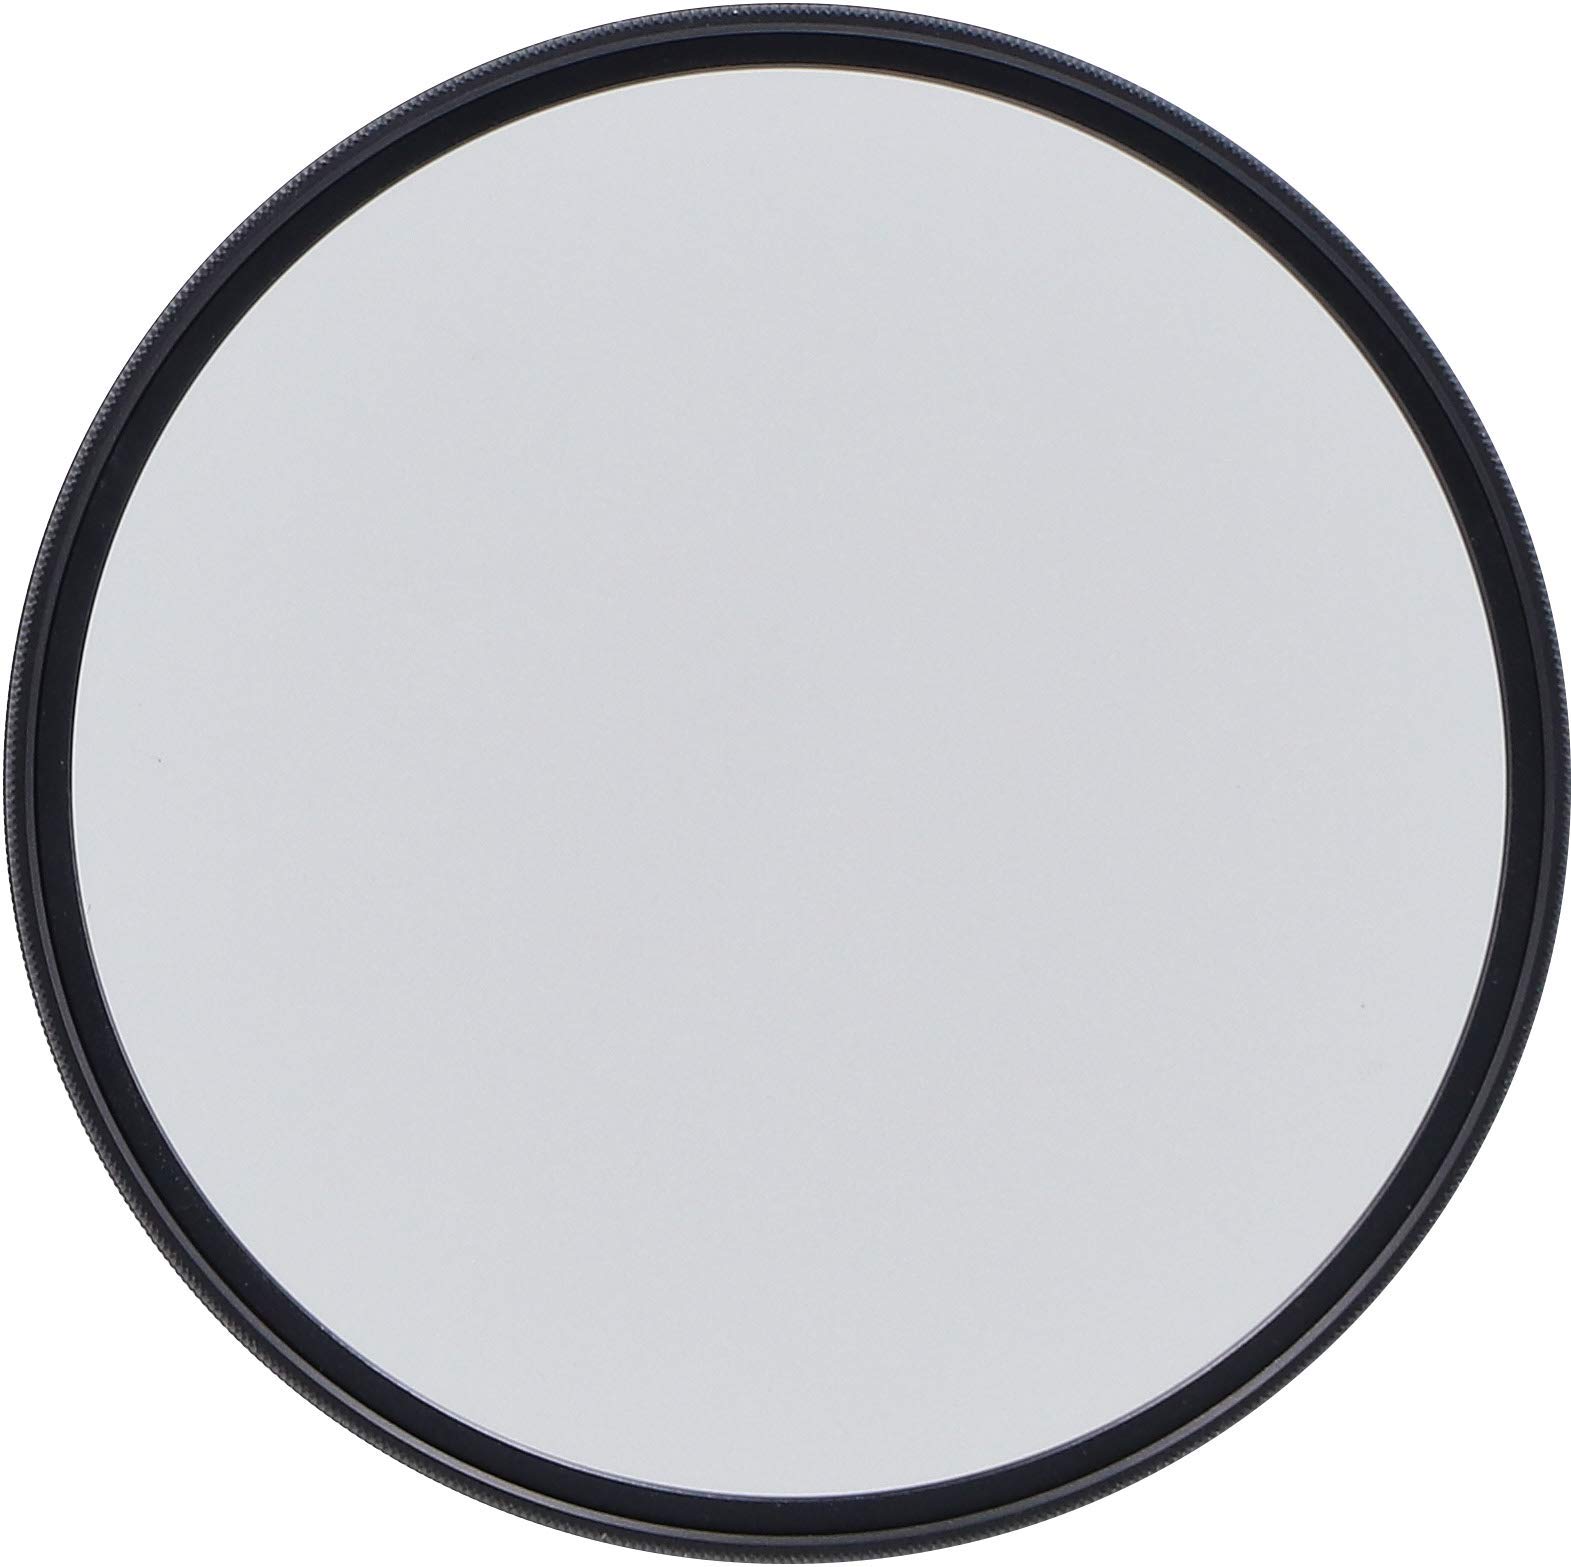 Rollei F:X Pro Rundfilter (82 mm, CPL-Filter) Schraubfilter aus Gorilla®* Glas mit hoher Farbtreue und Reflexionsfreiheit